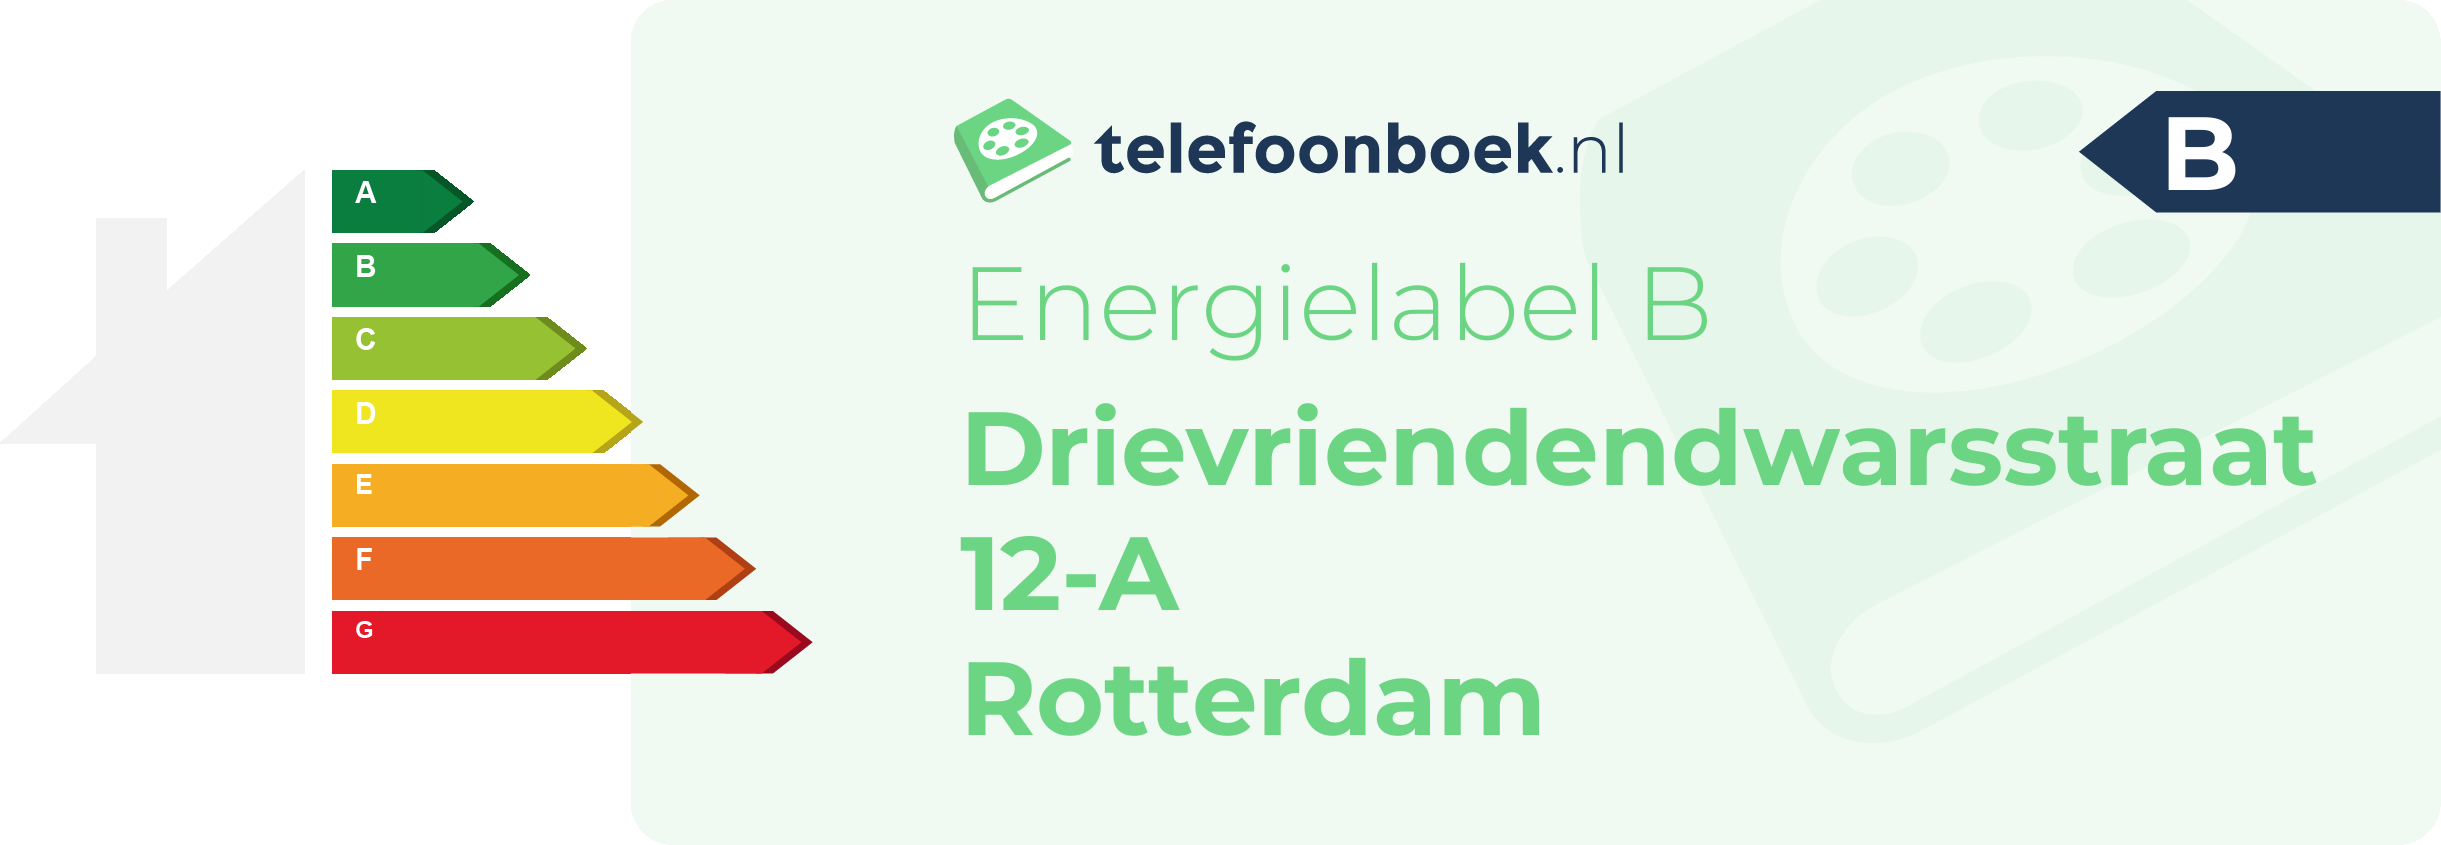 Energielabel Drievriendendwarsstraat 12-A Rotterdam